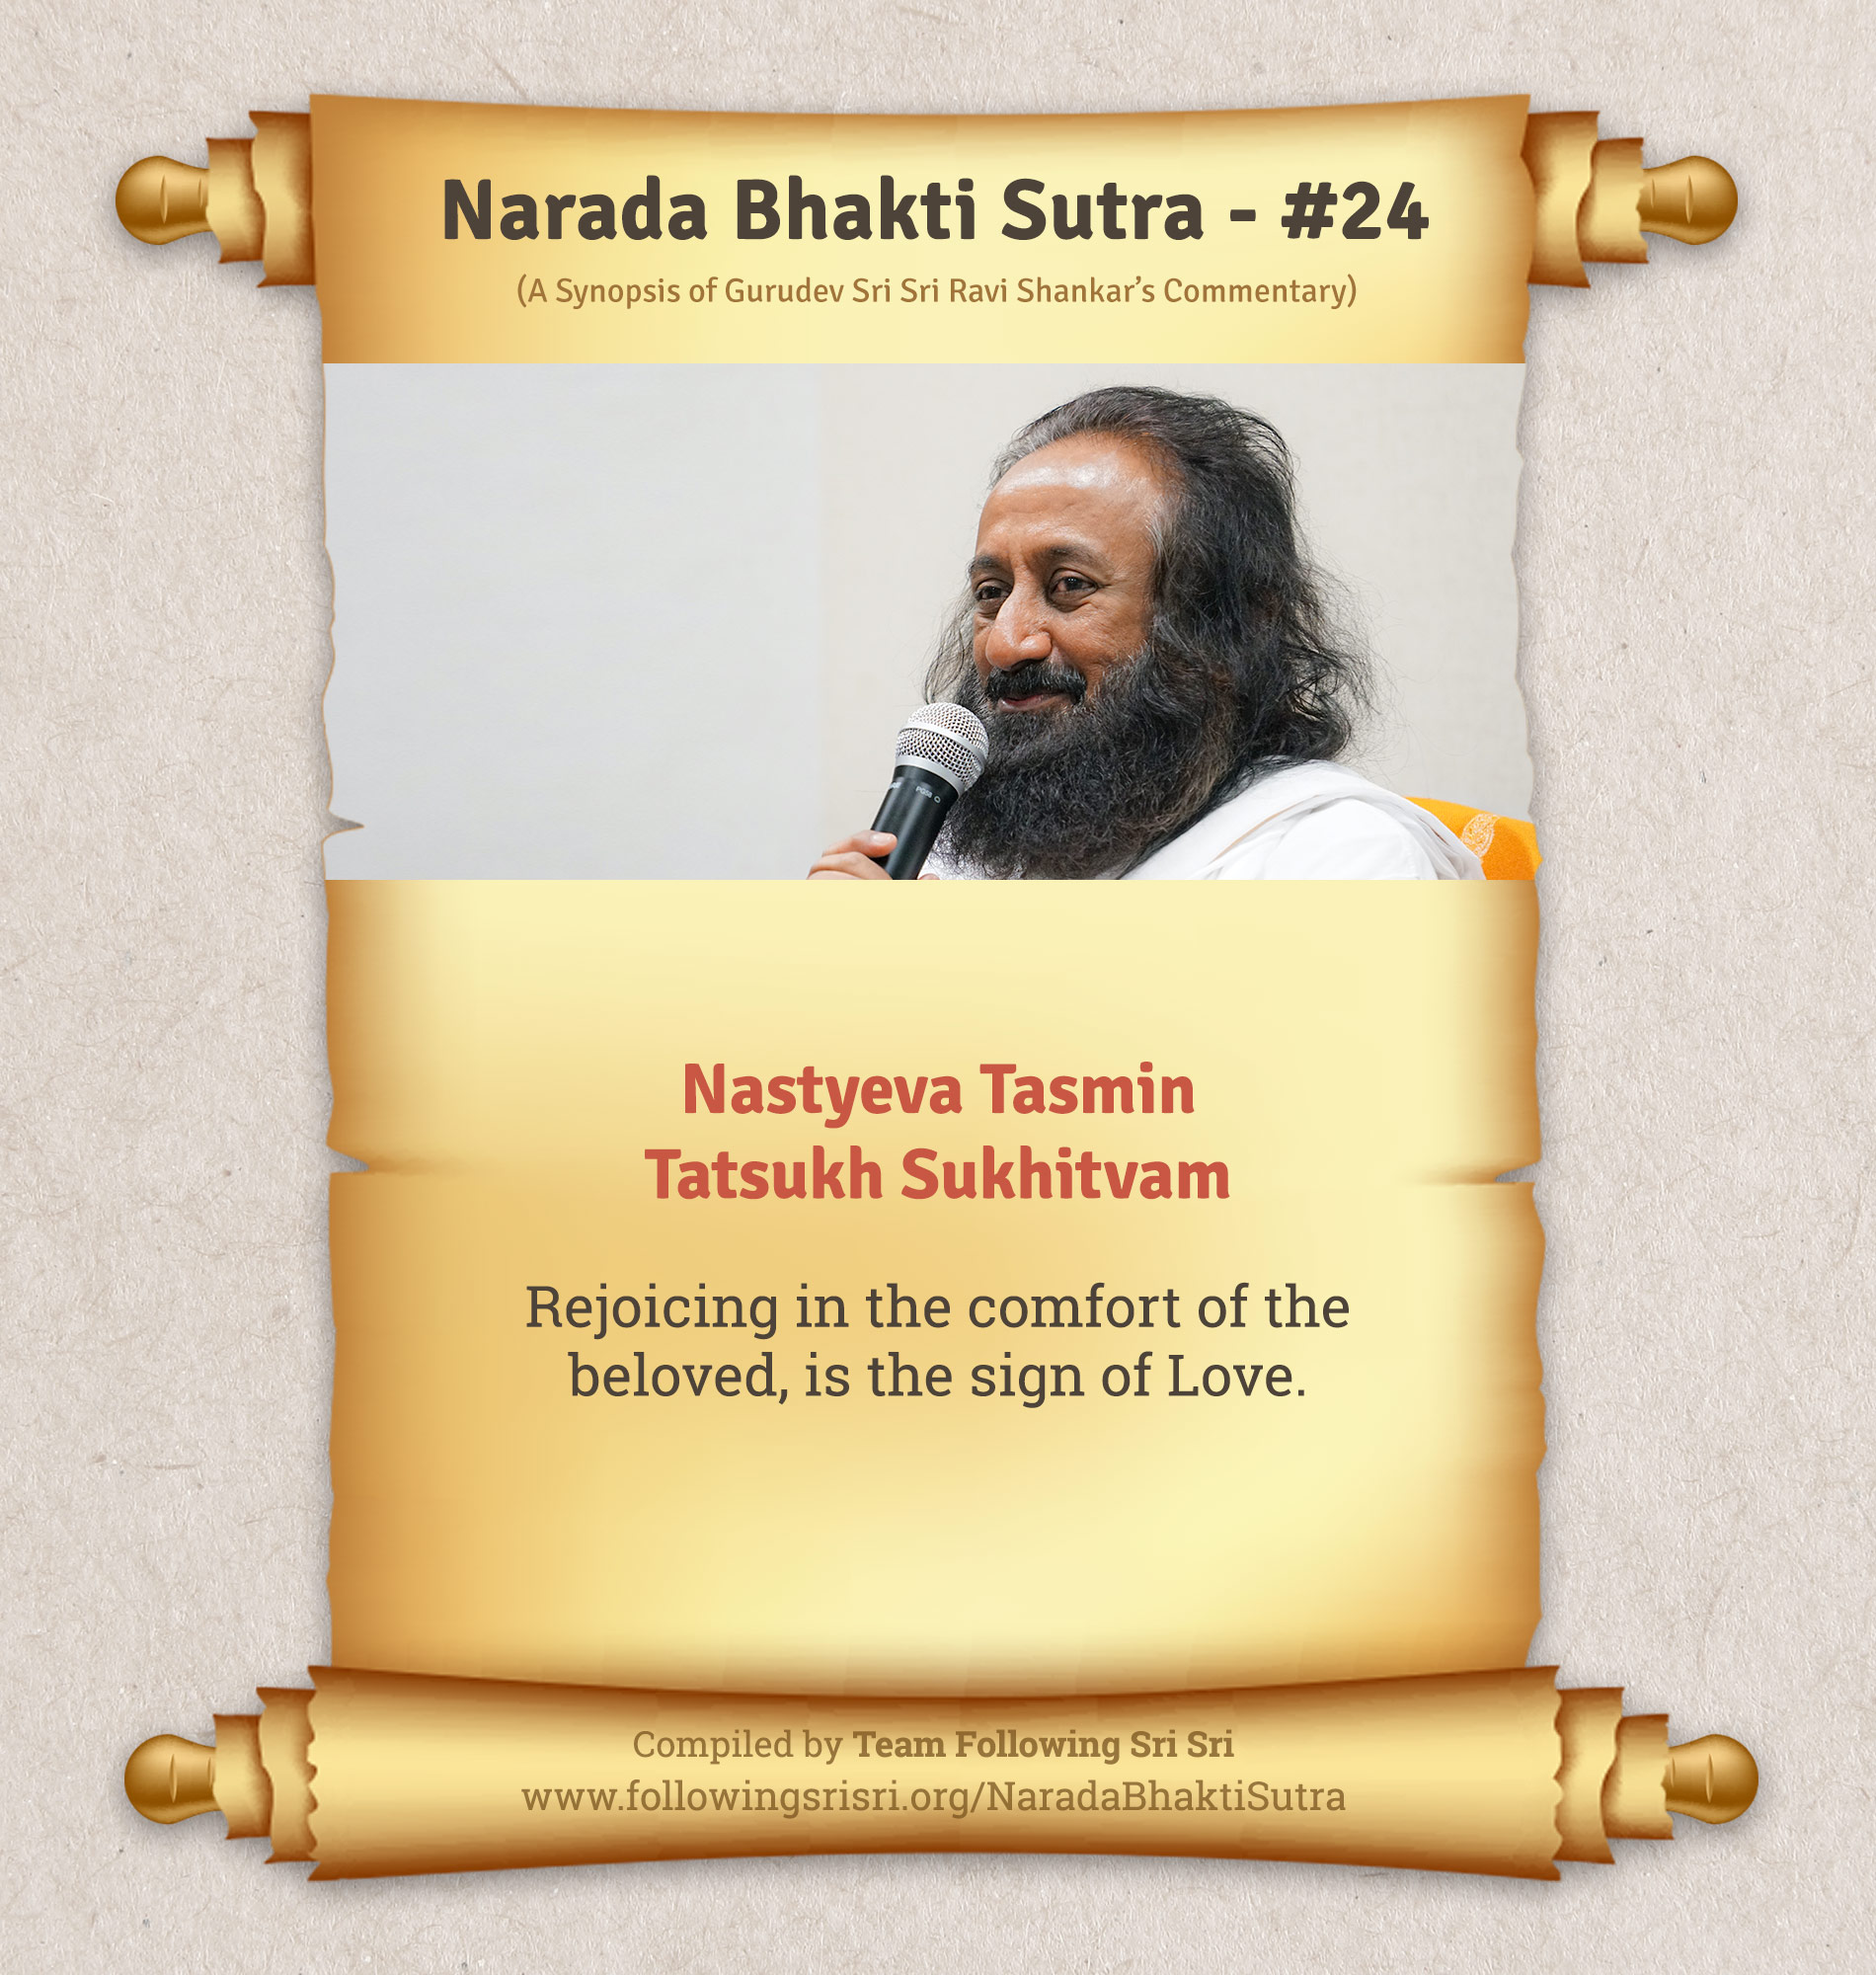 Narada Bhakti Sutras - Sutra 24